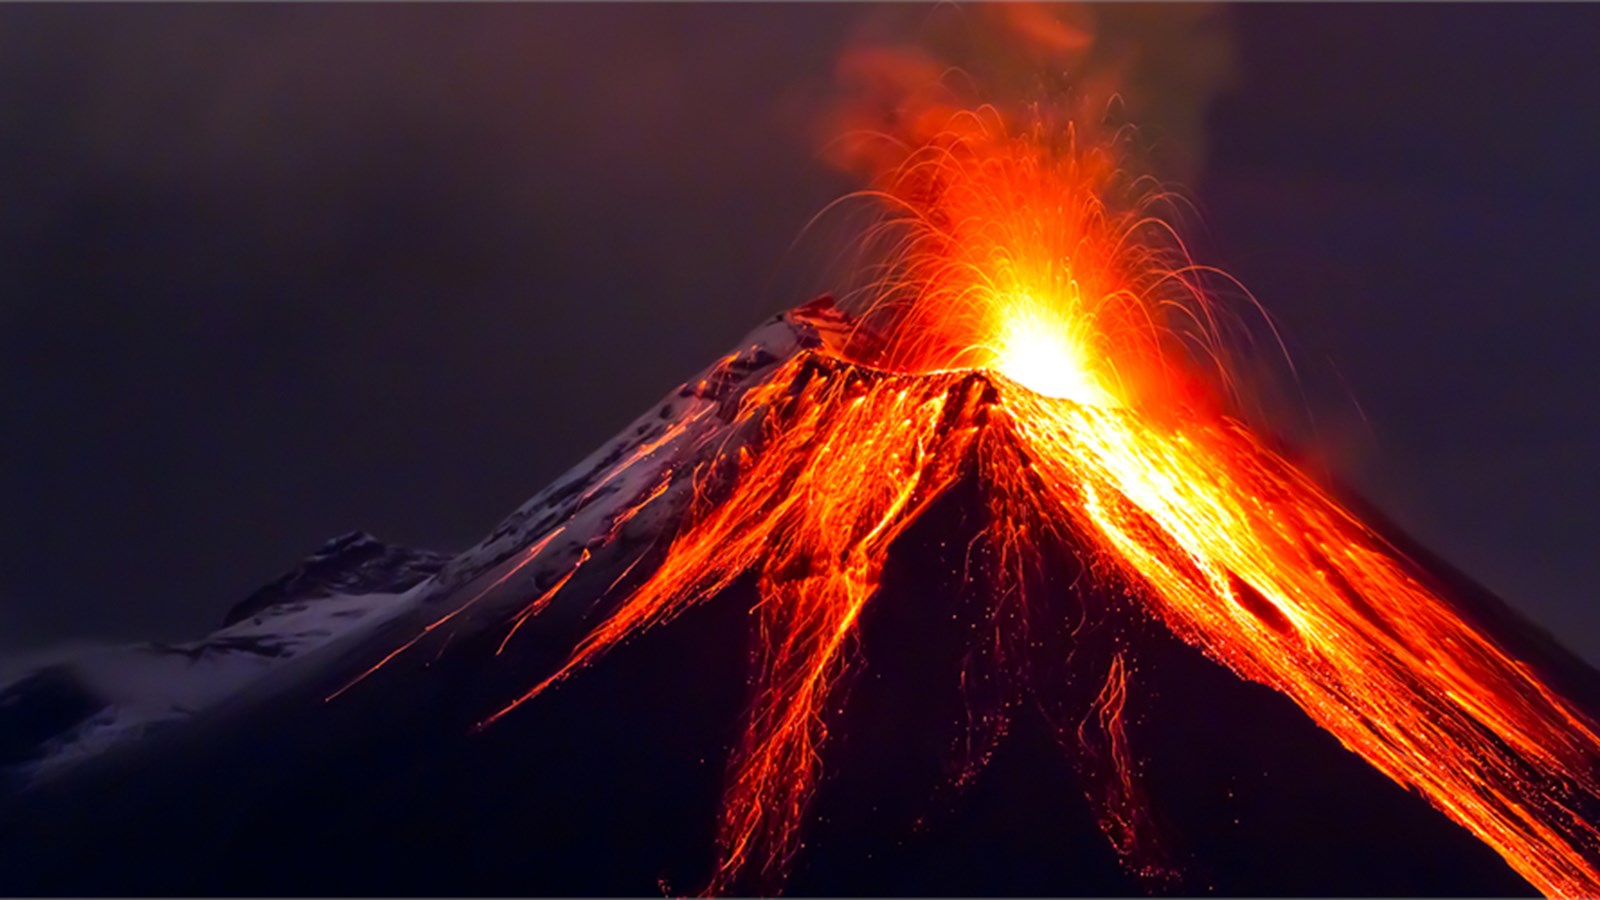 Kilauea Volcano of 600,000 years in Hawaii has been erupting since 1983